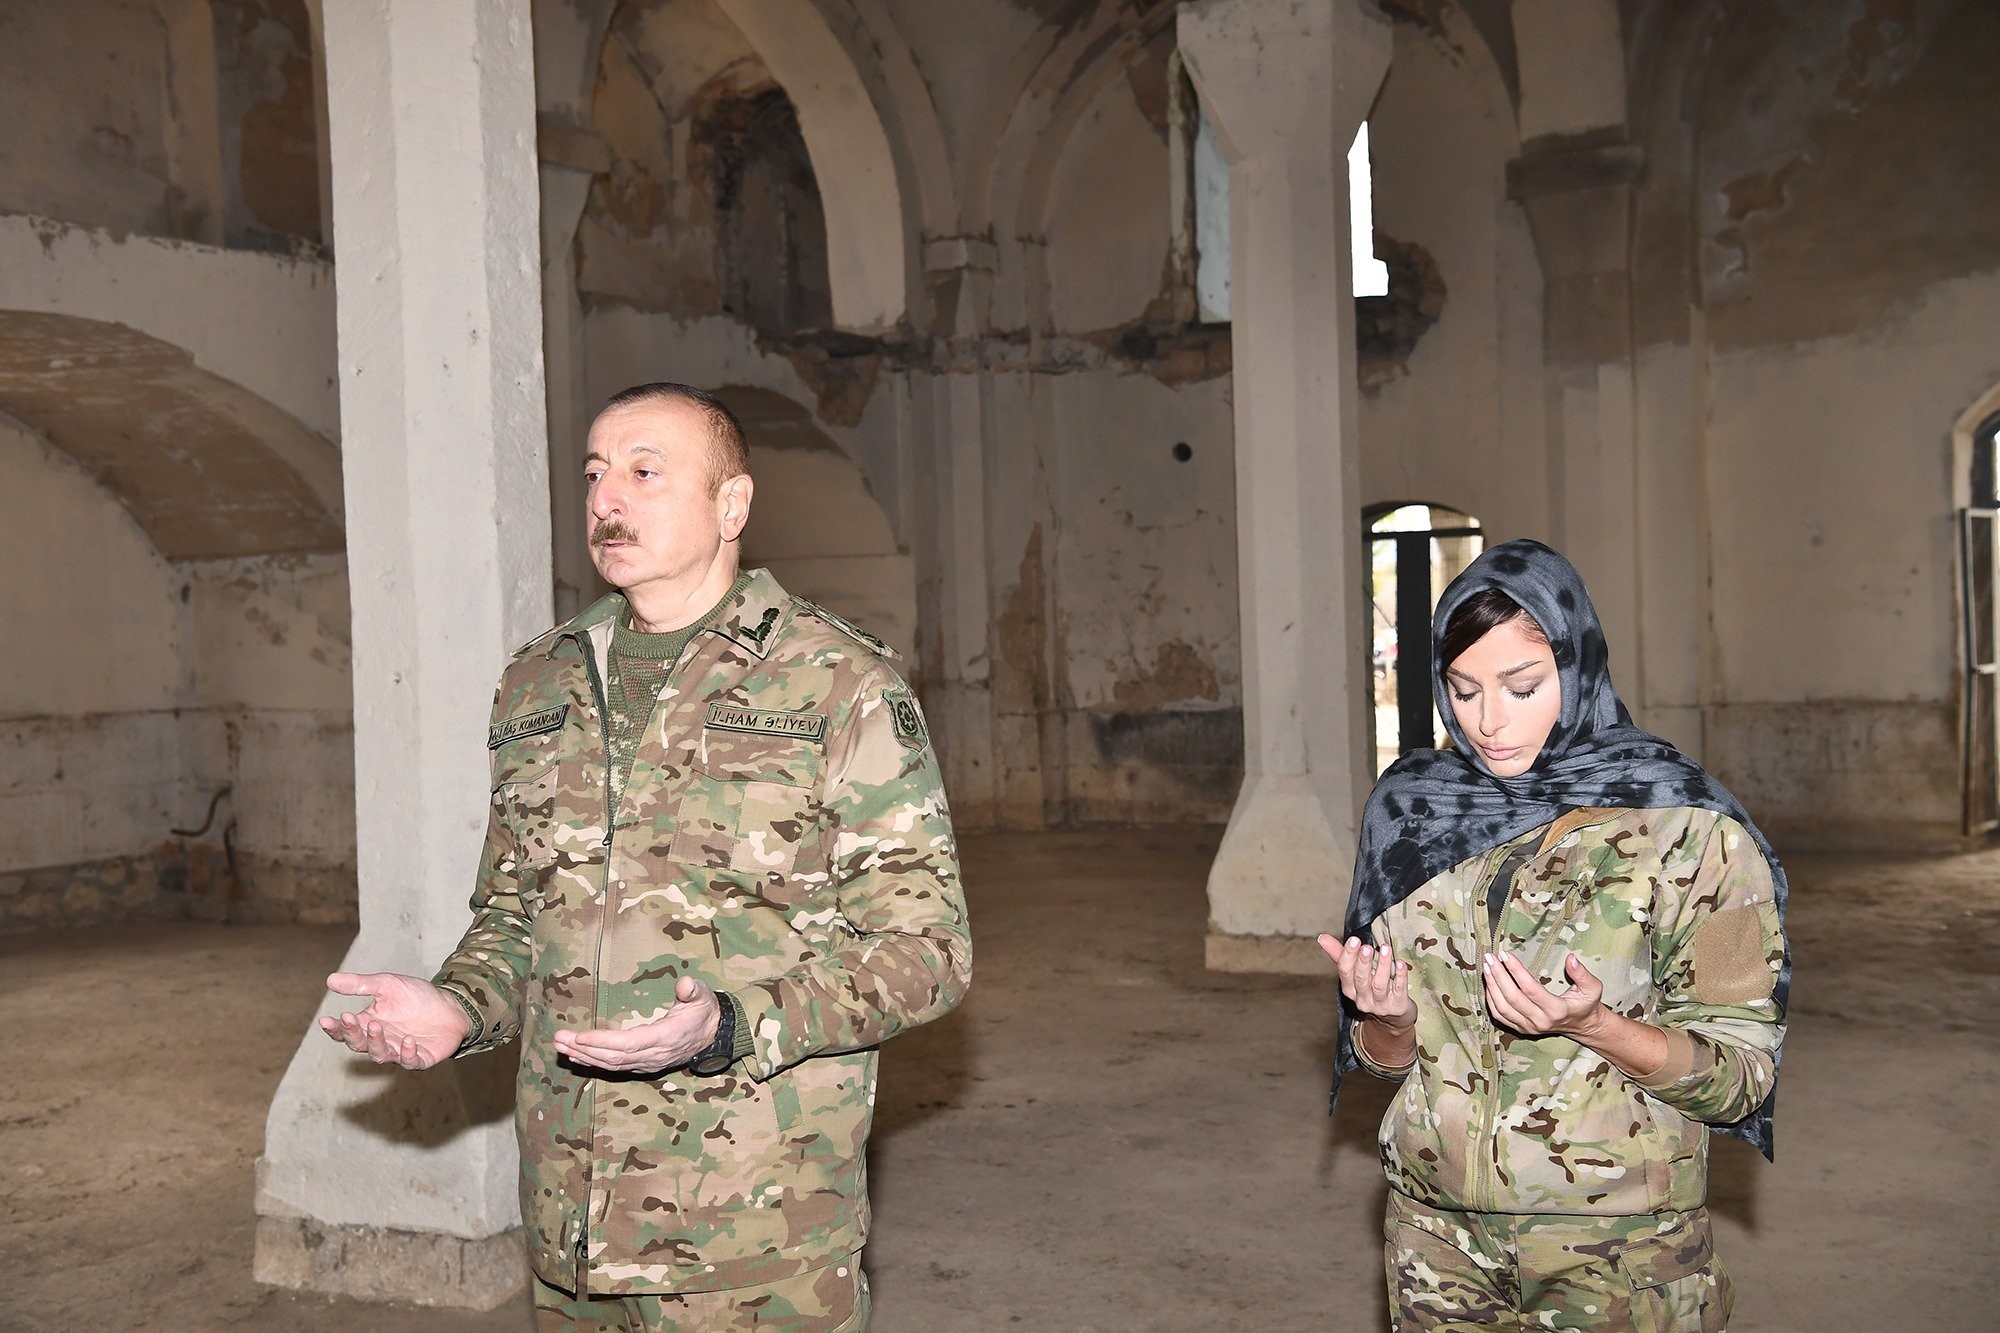 الرئيس-إلهام-علييف-وزوجته-مهريبان-علييفا-في-مسجد-تاريخي-مدينة-أغدام-المحررة.jpg